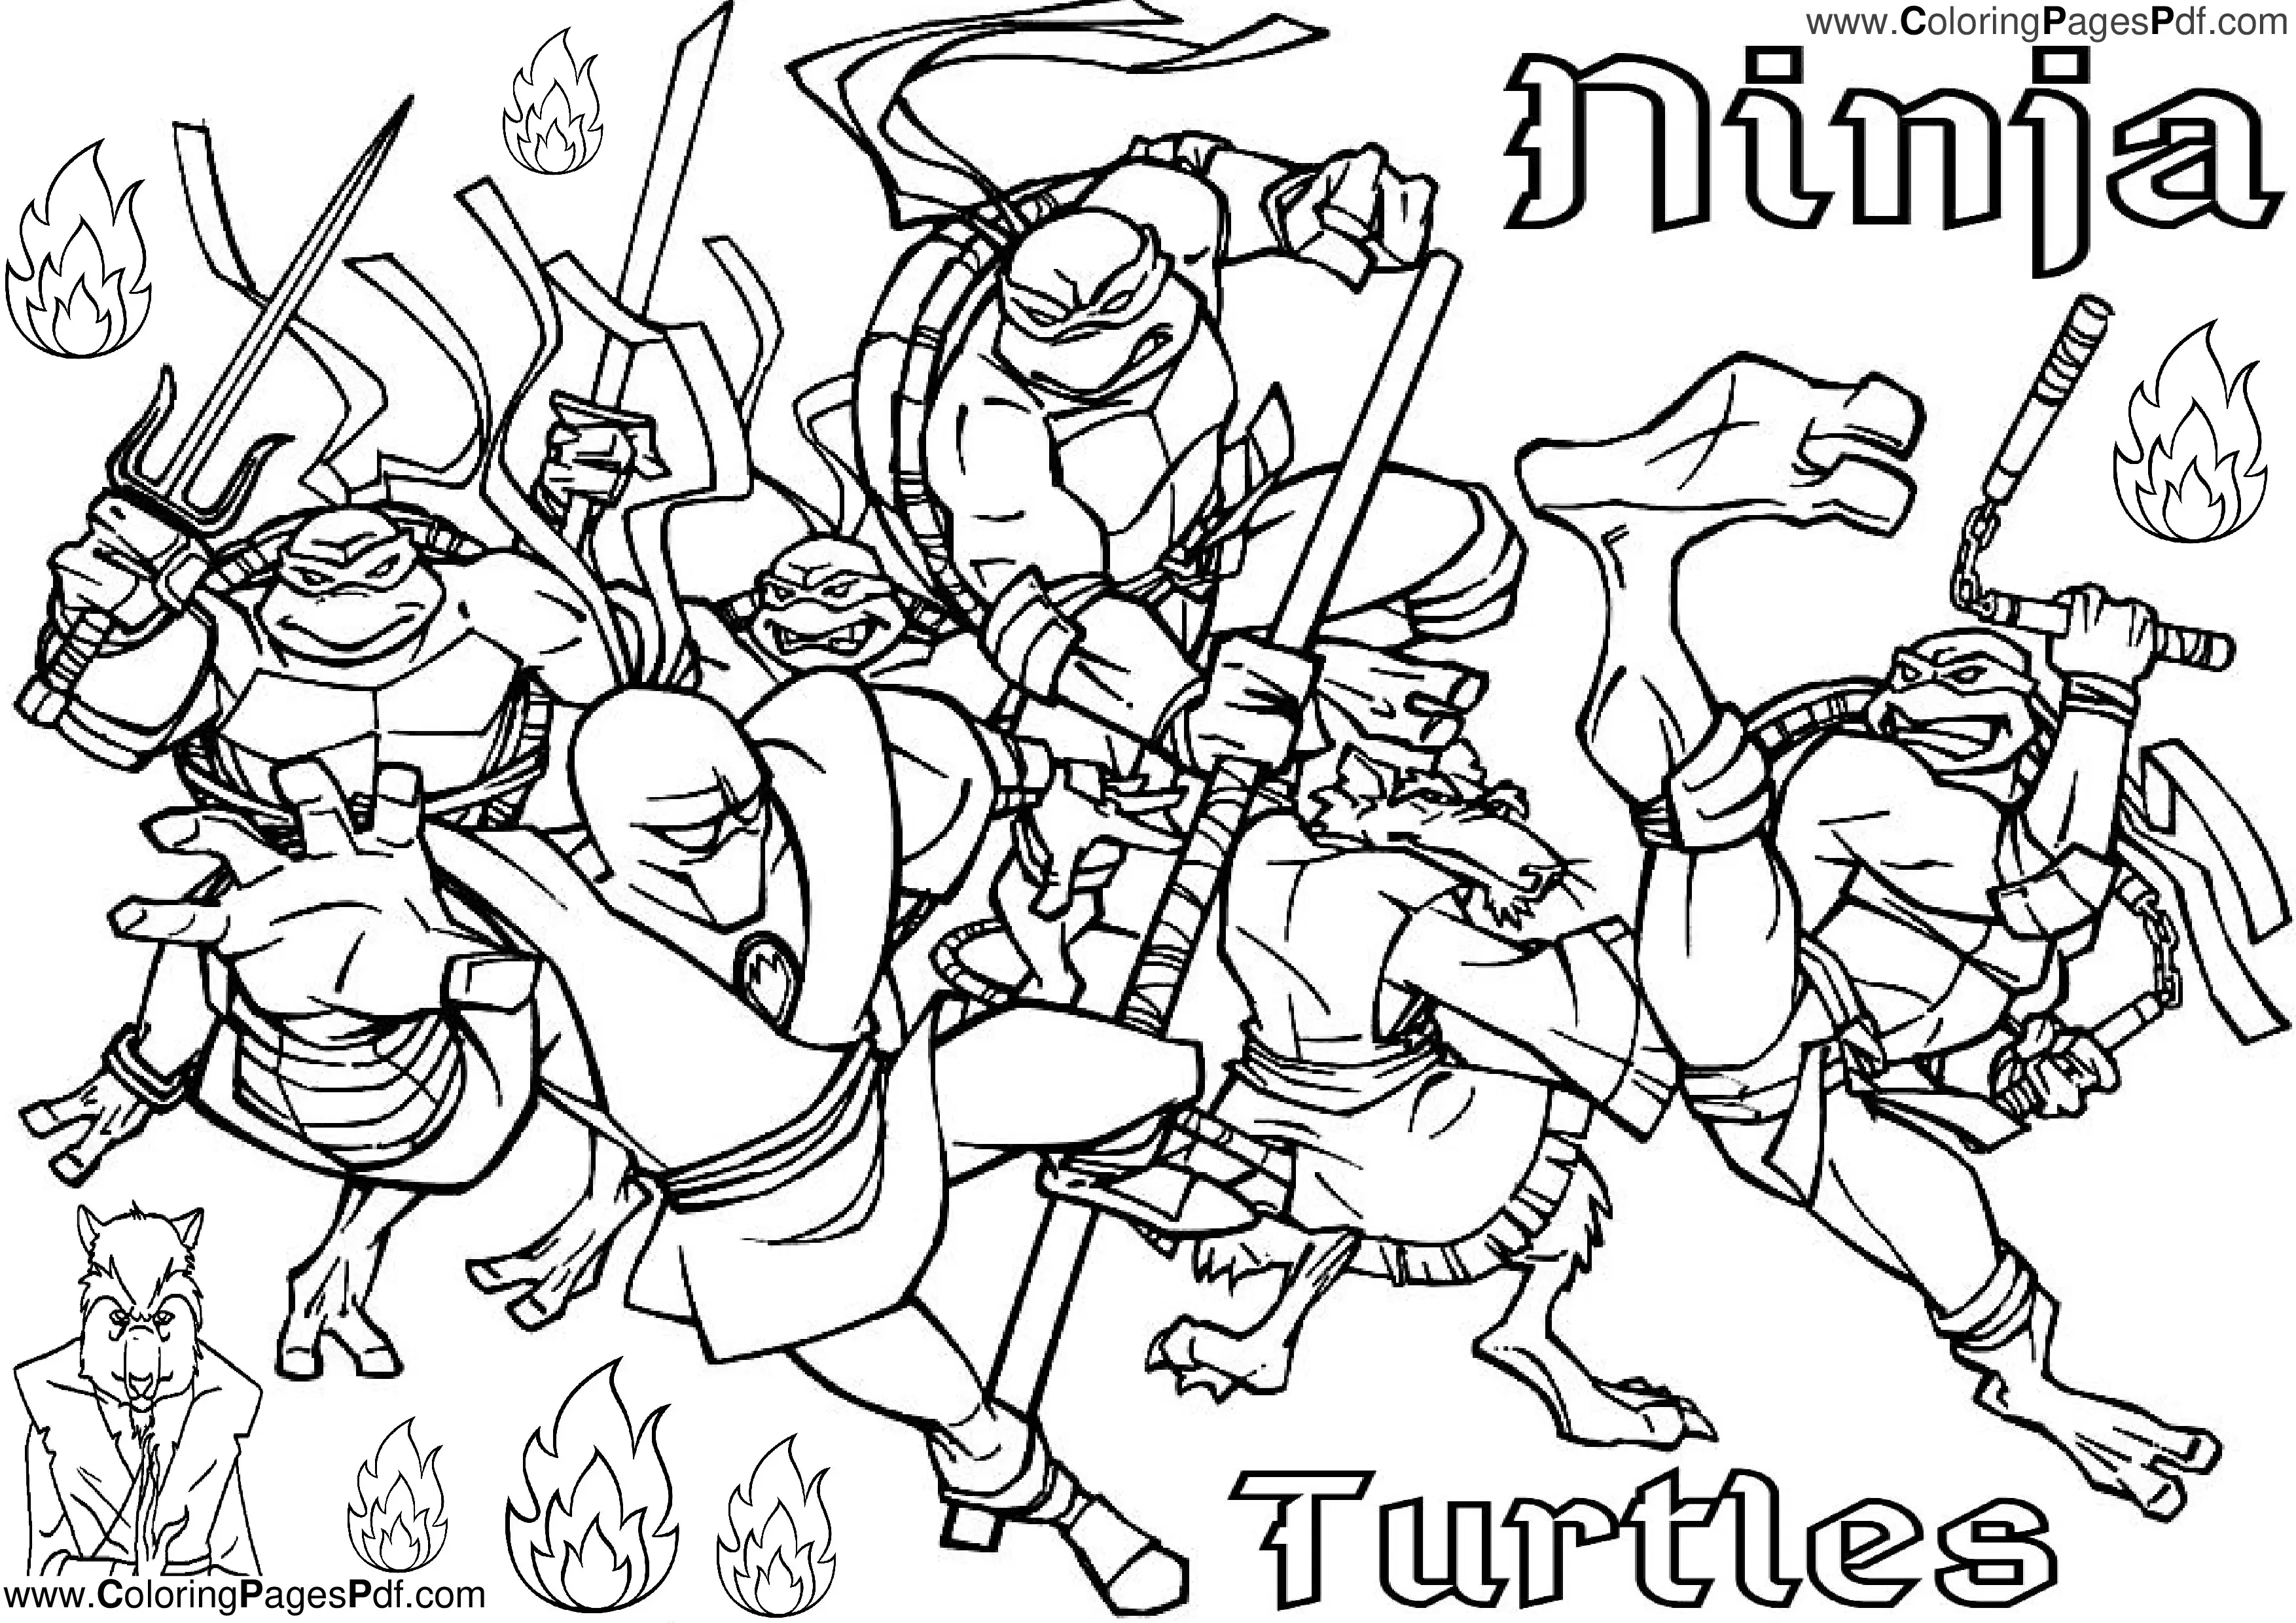 new teenage mutant ninja turtles,netflix teenage mutant ninja turtles 1990,the new ninja turtles,the new teenage mutant ninja turtles,the teenage mutant ninja turtles,new tmnt,paramount plus tmnt,teenage mutant ninja turtles ooze,teenage mutant ninja turtles tv,tmnt paramount plus